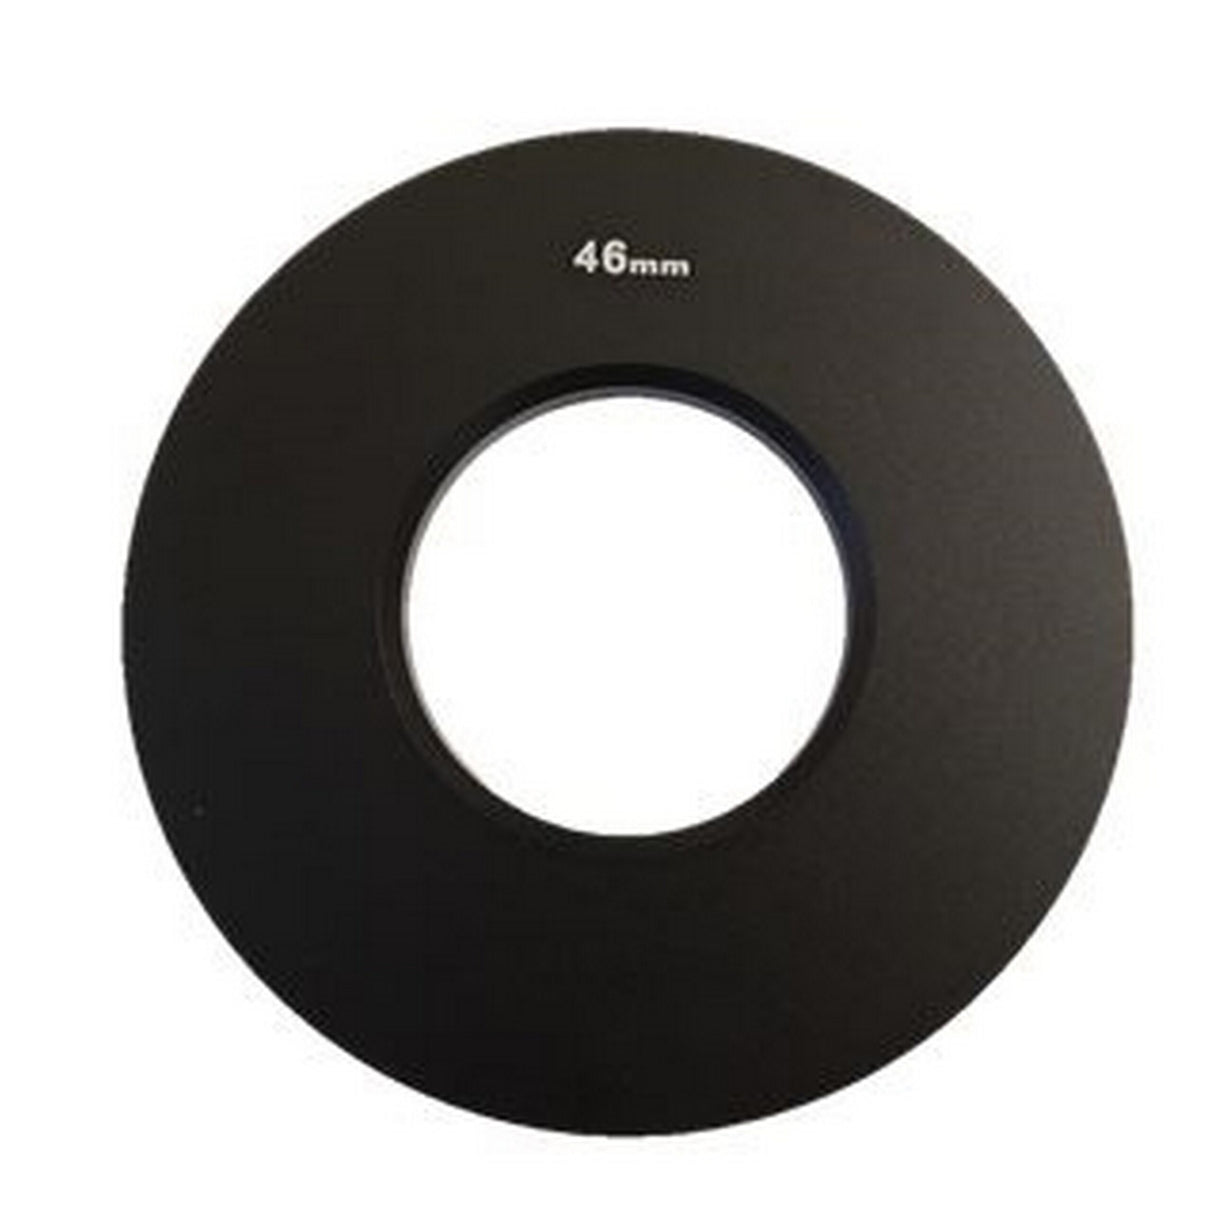 Genustech GAR46 Lens Adapter Ring, 46mm